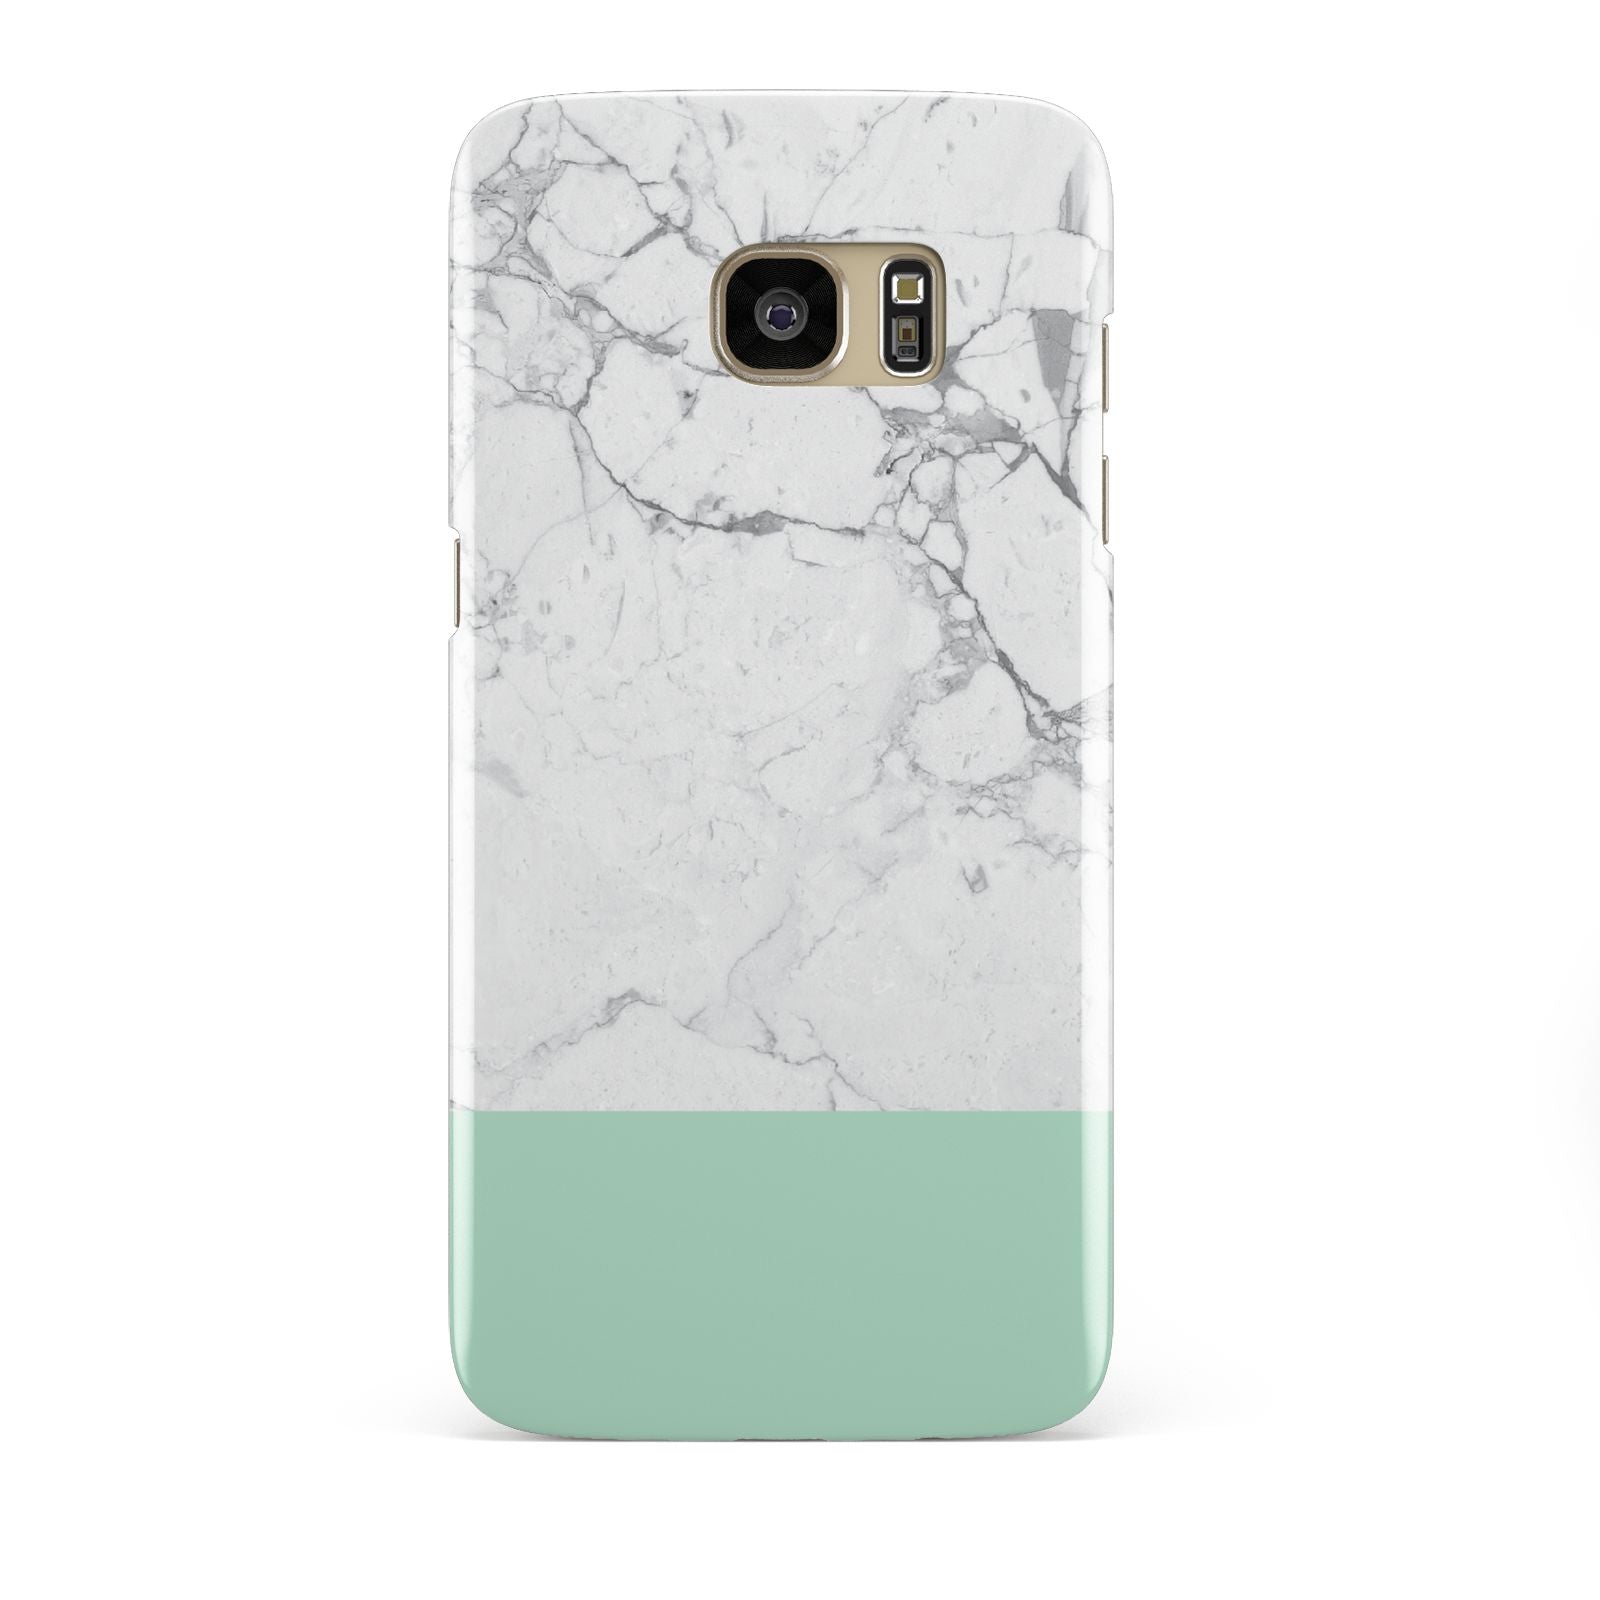 Marble White Carrara Green Samsung Galaxy S7 Edge Case